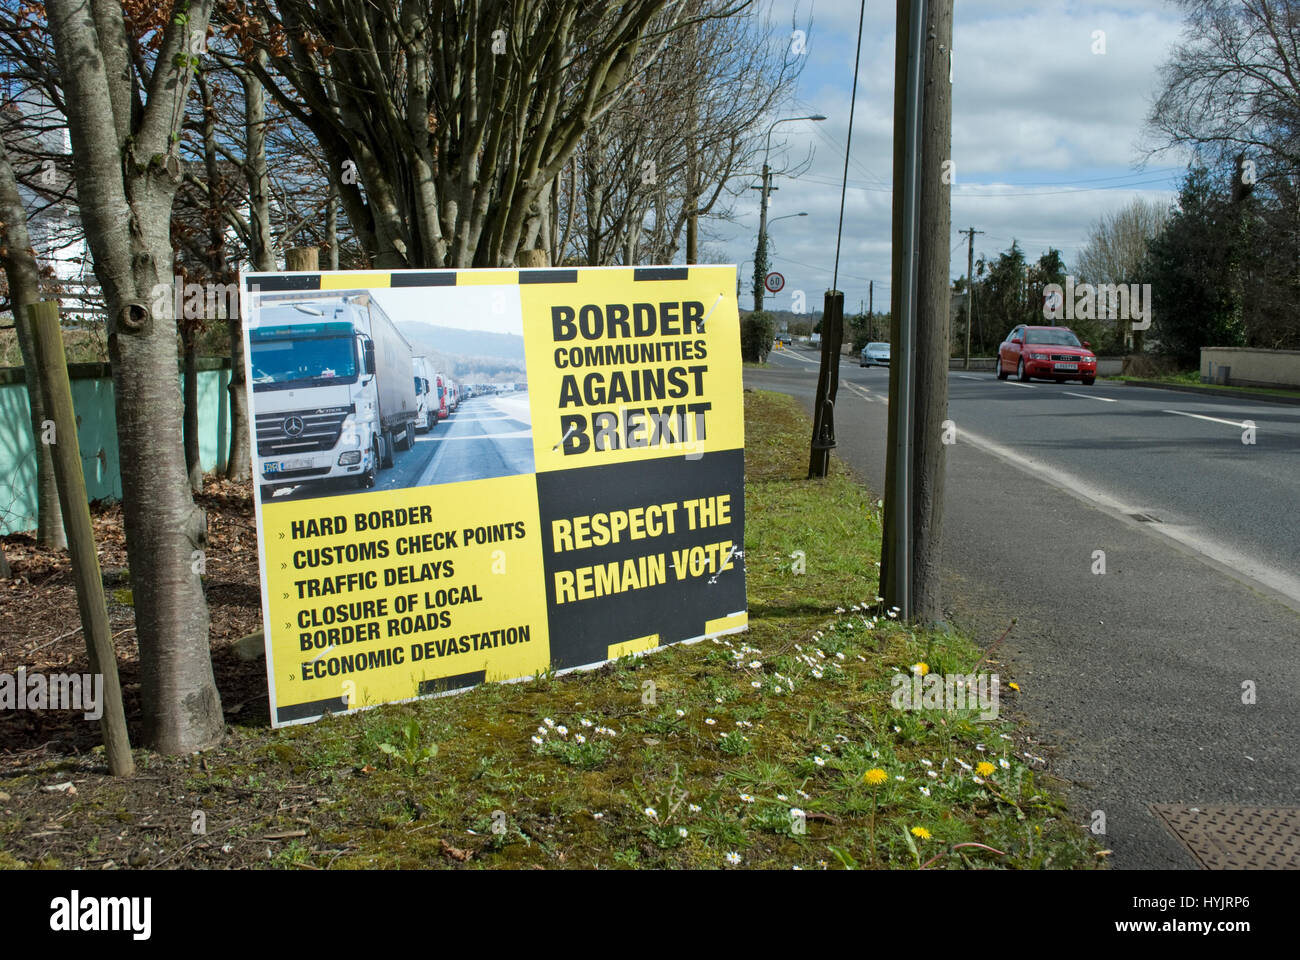 Un signo de la campaña "principal", cerca de la frontera irlandesa protestando contra brexit. Foto de stock